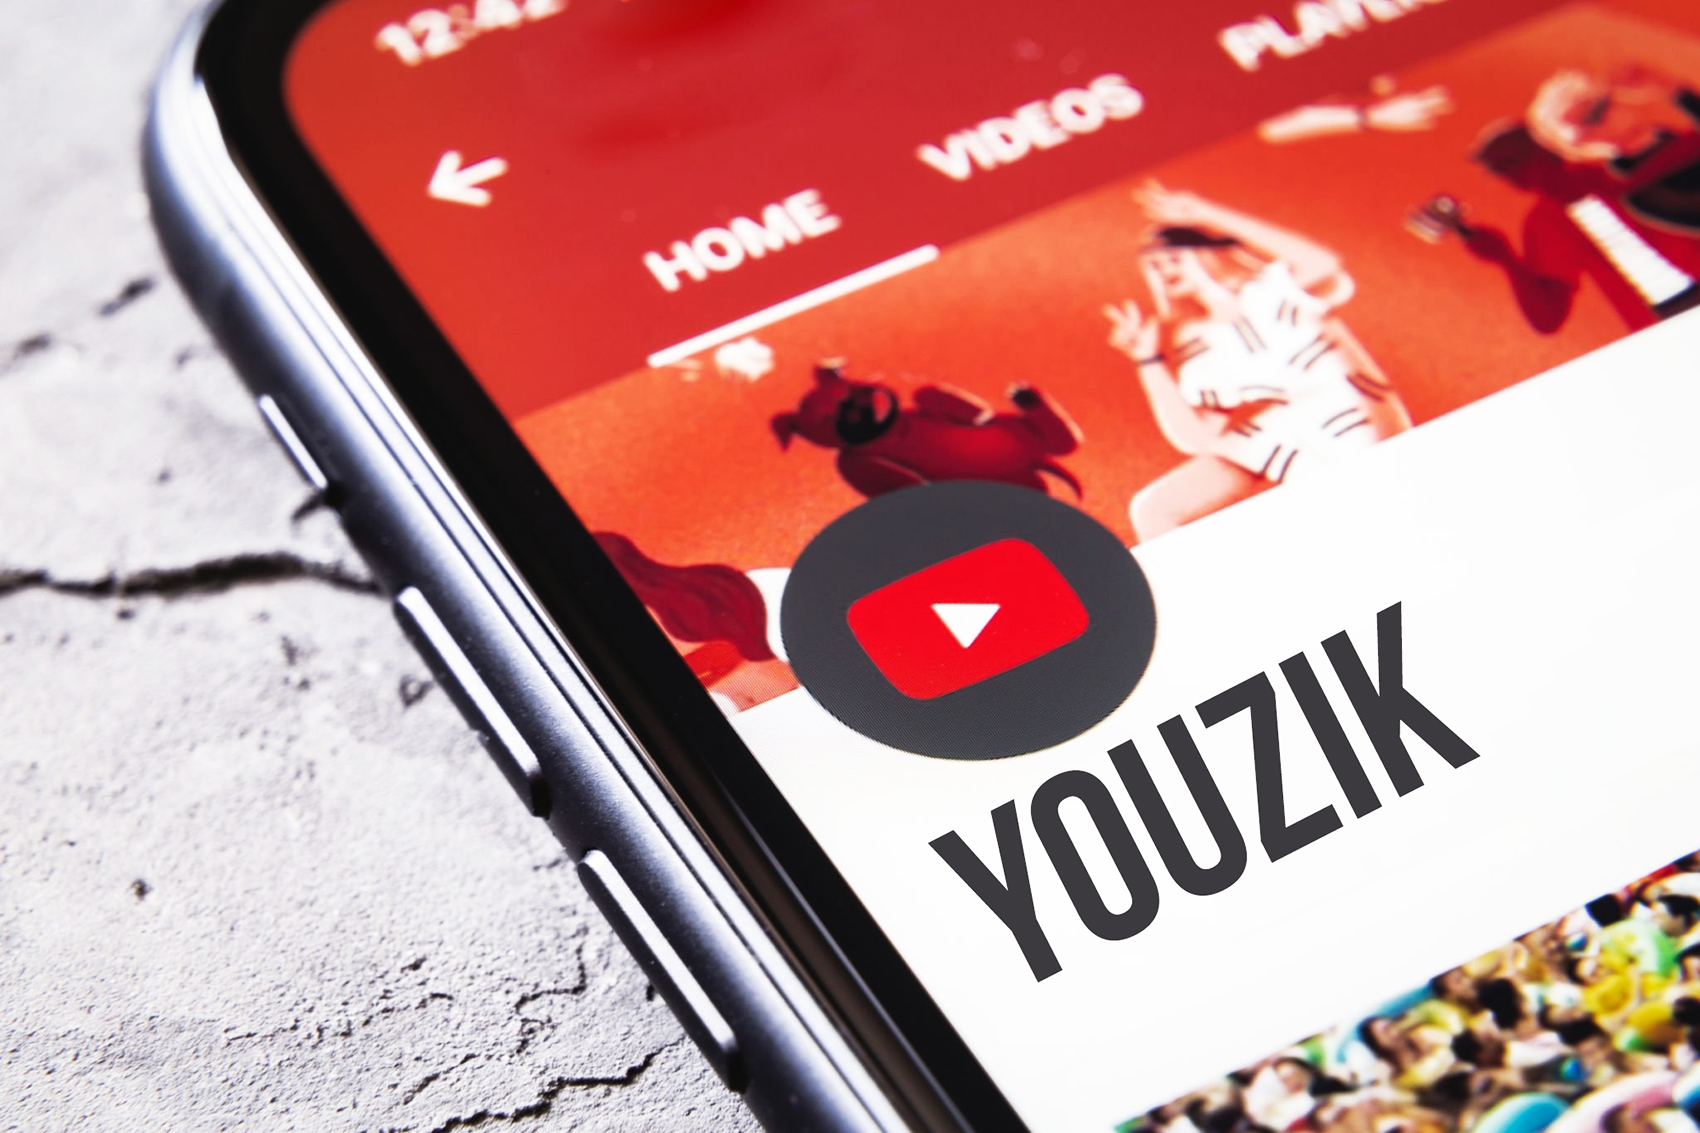 Youzik: Nova adresa Youtube MP3 Converter za preuzimanje besplatne muzike